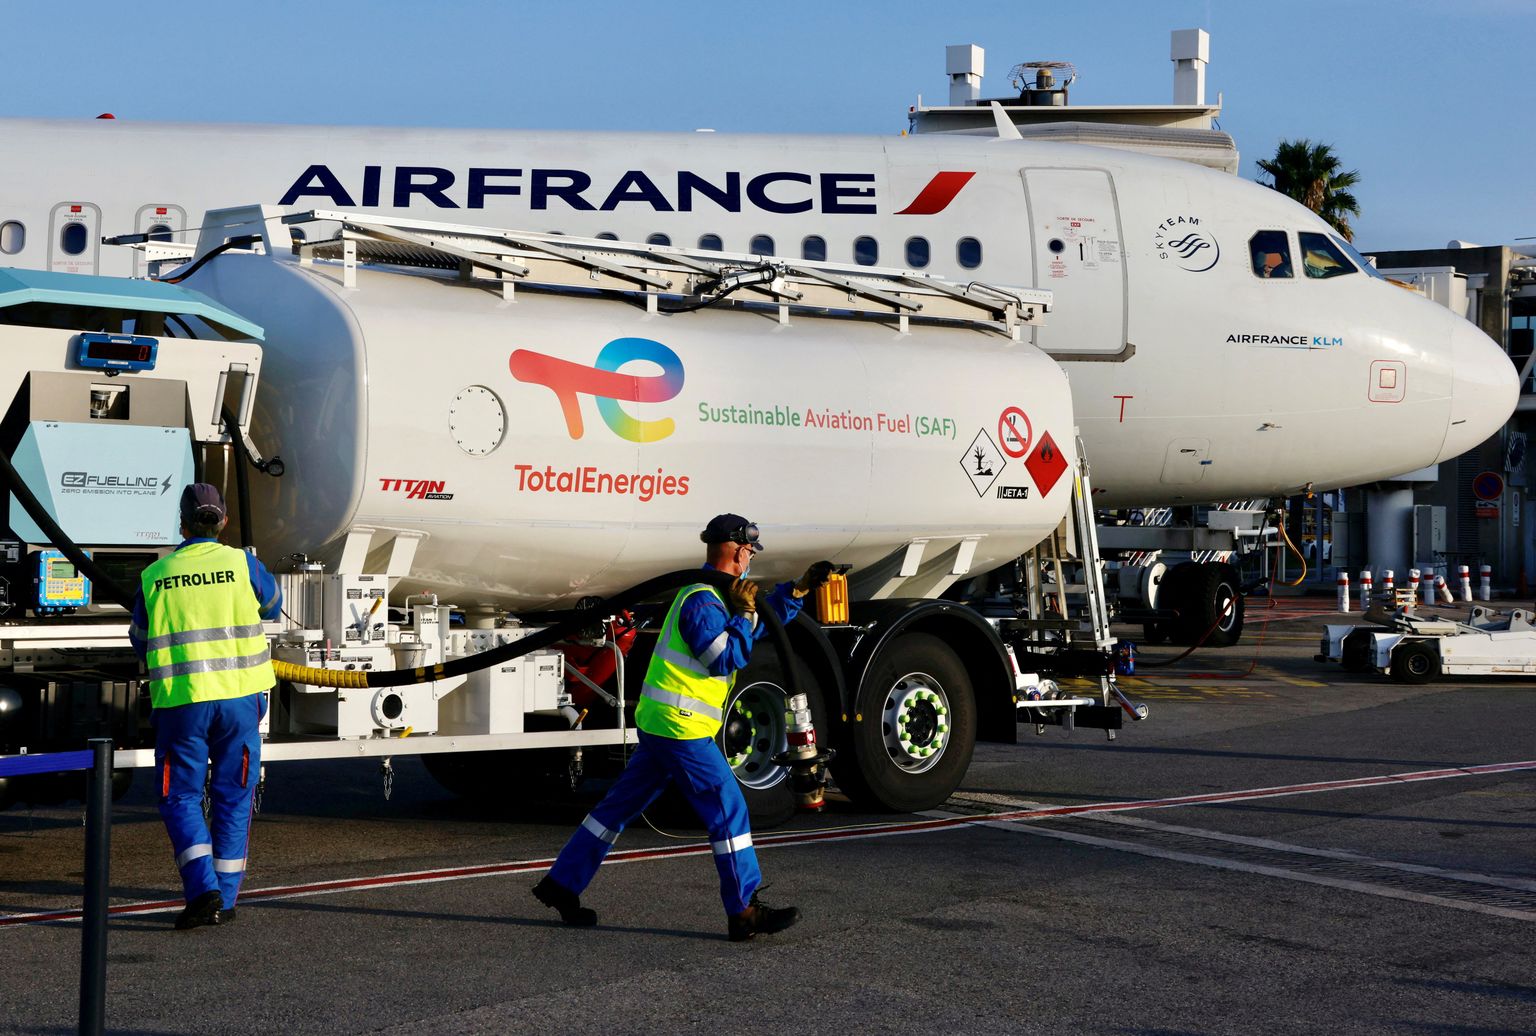 Air France lennuk